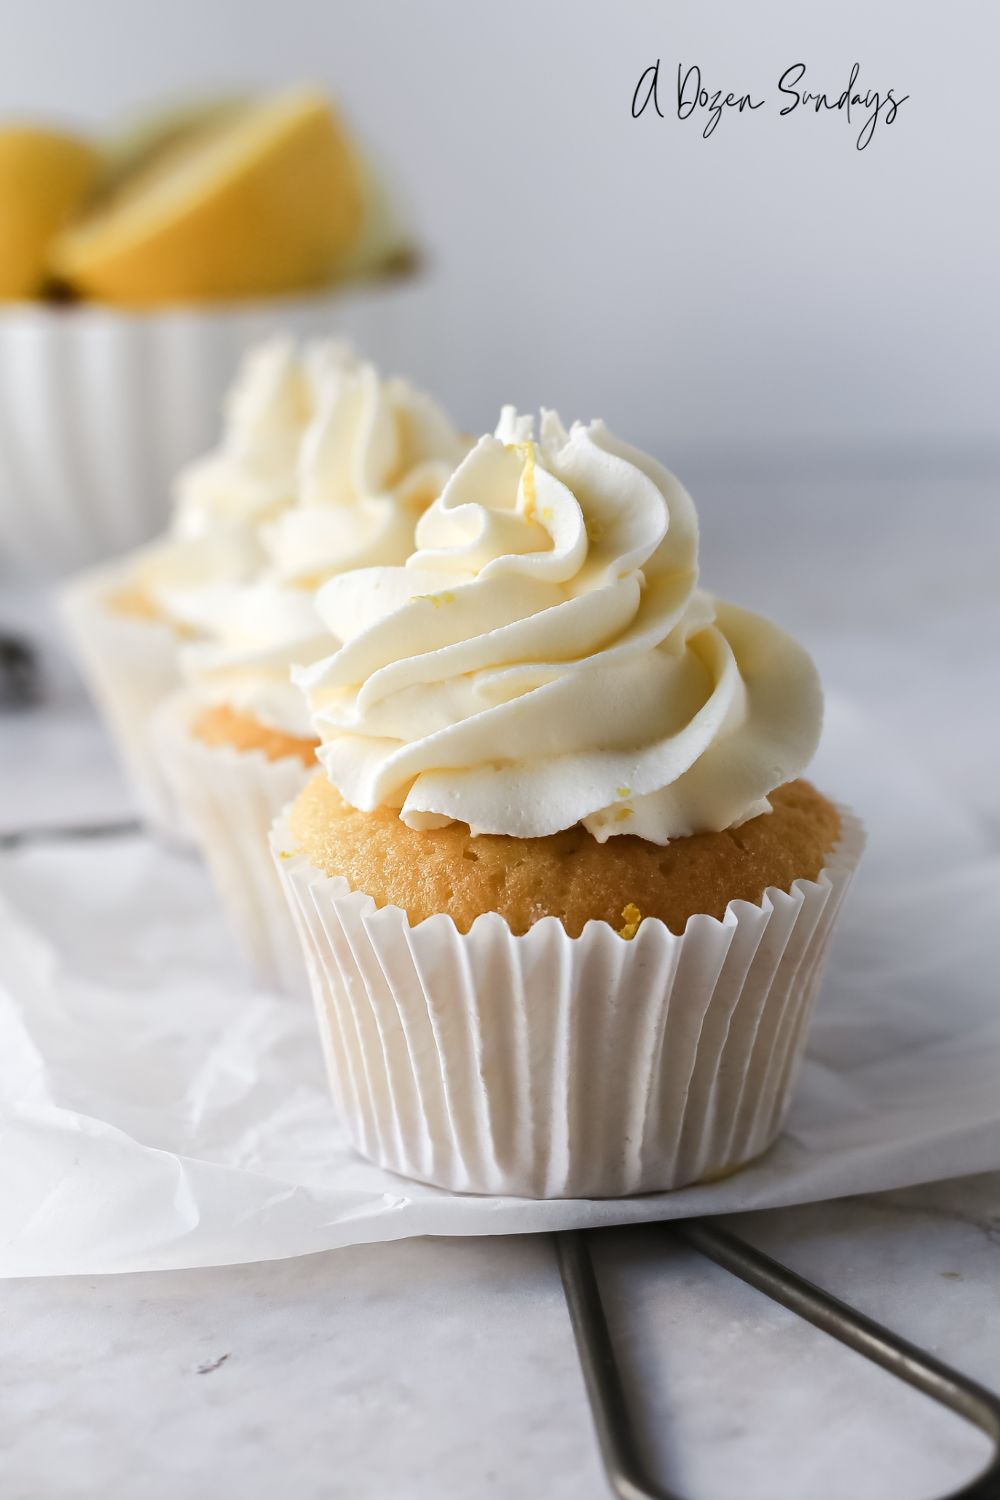 Easy Lemon Curd Cupcakes Recipe - Lemon Sponge with Lemon Buttercream - A Dozen Sundays